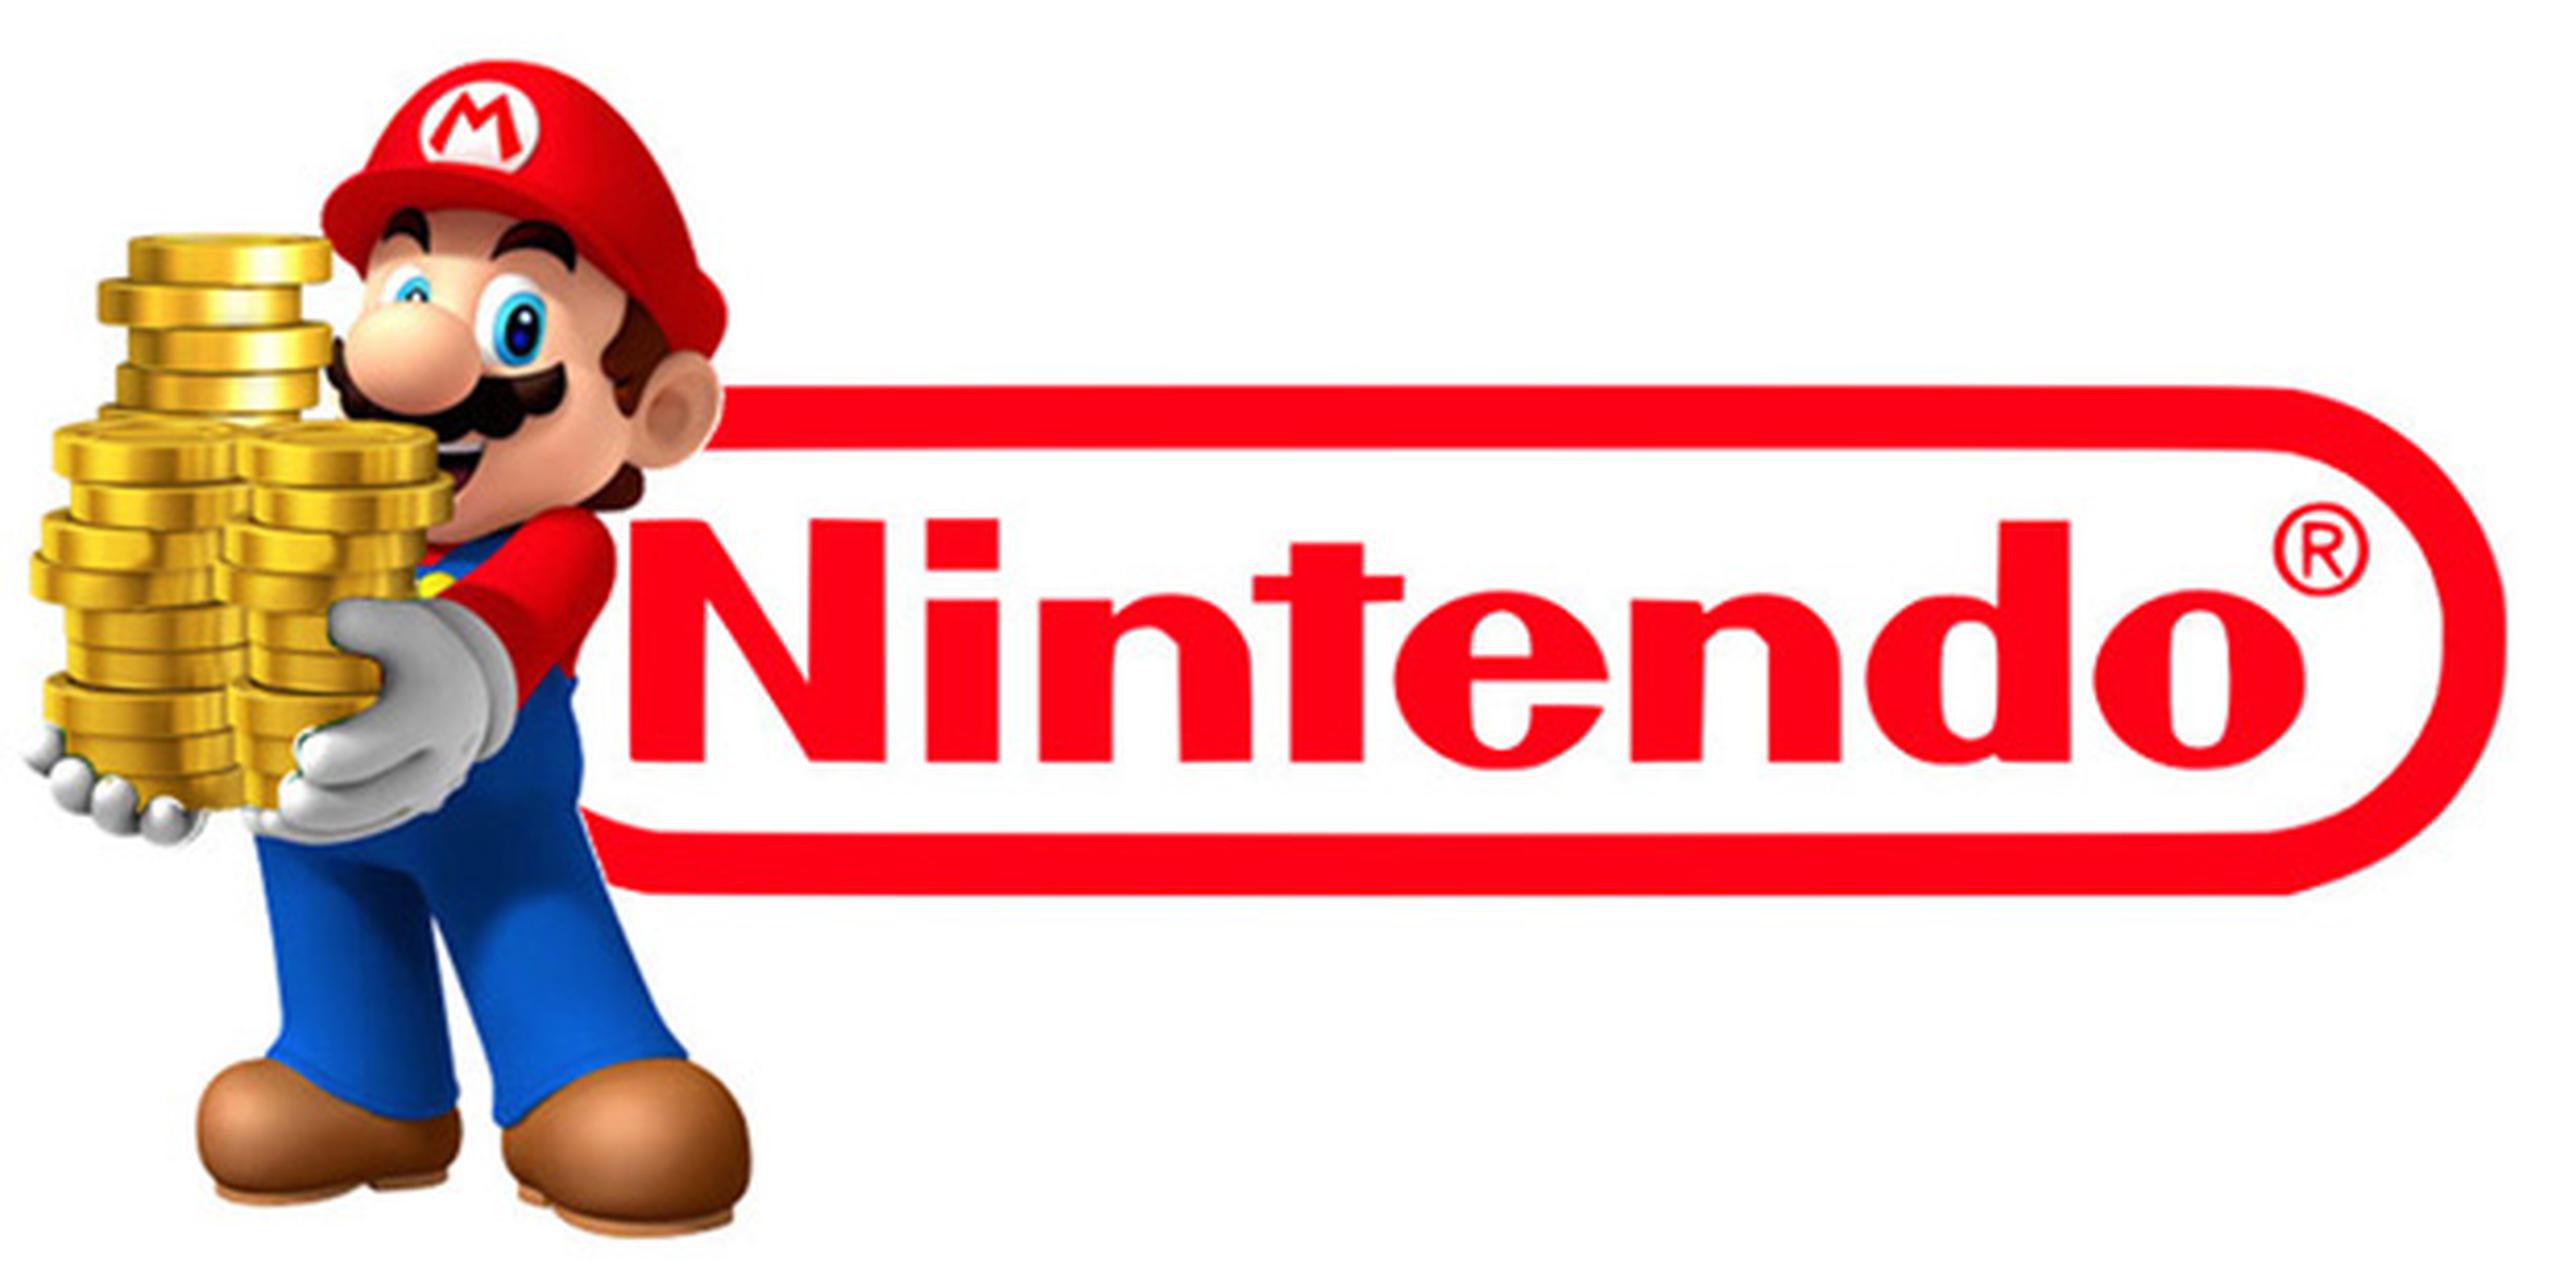 Nintendo no ofreció más detalles sobre la consola, excepto que se trata de "un concepto nuevo".